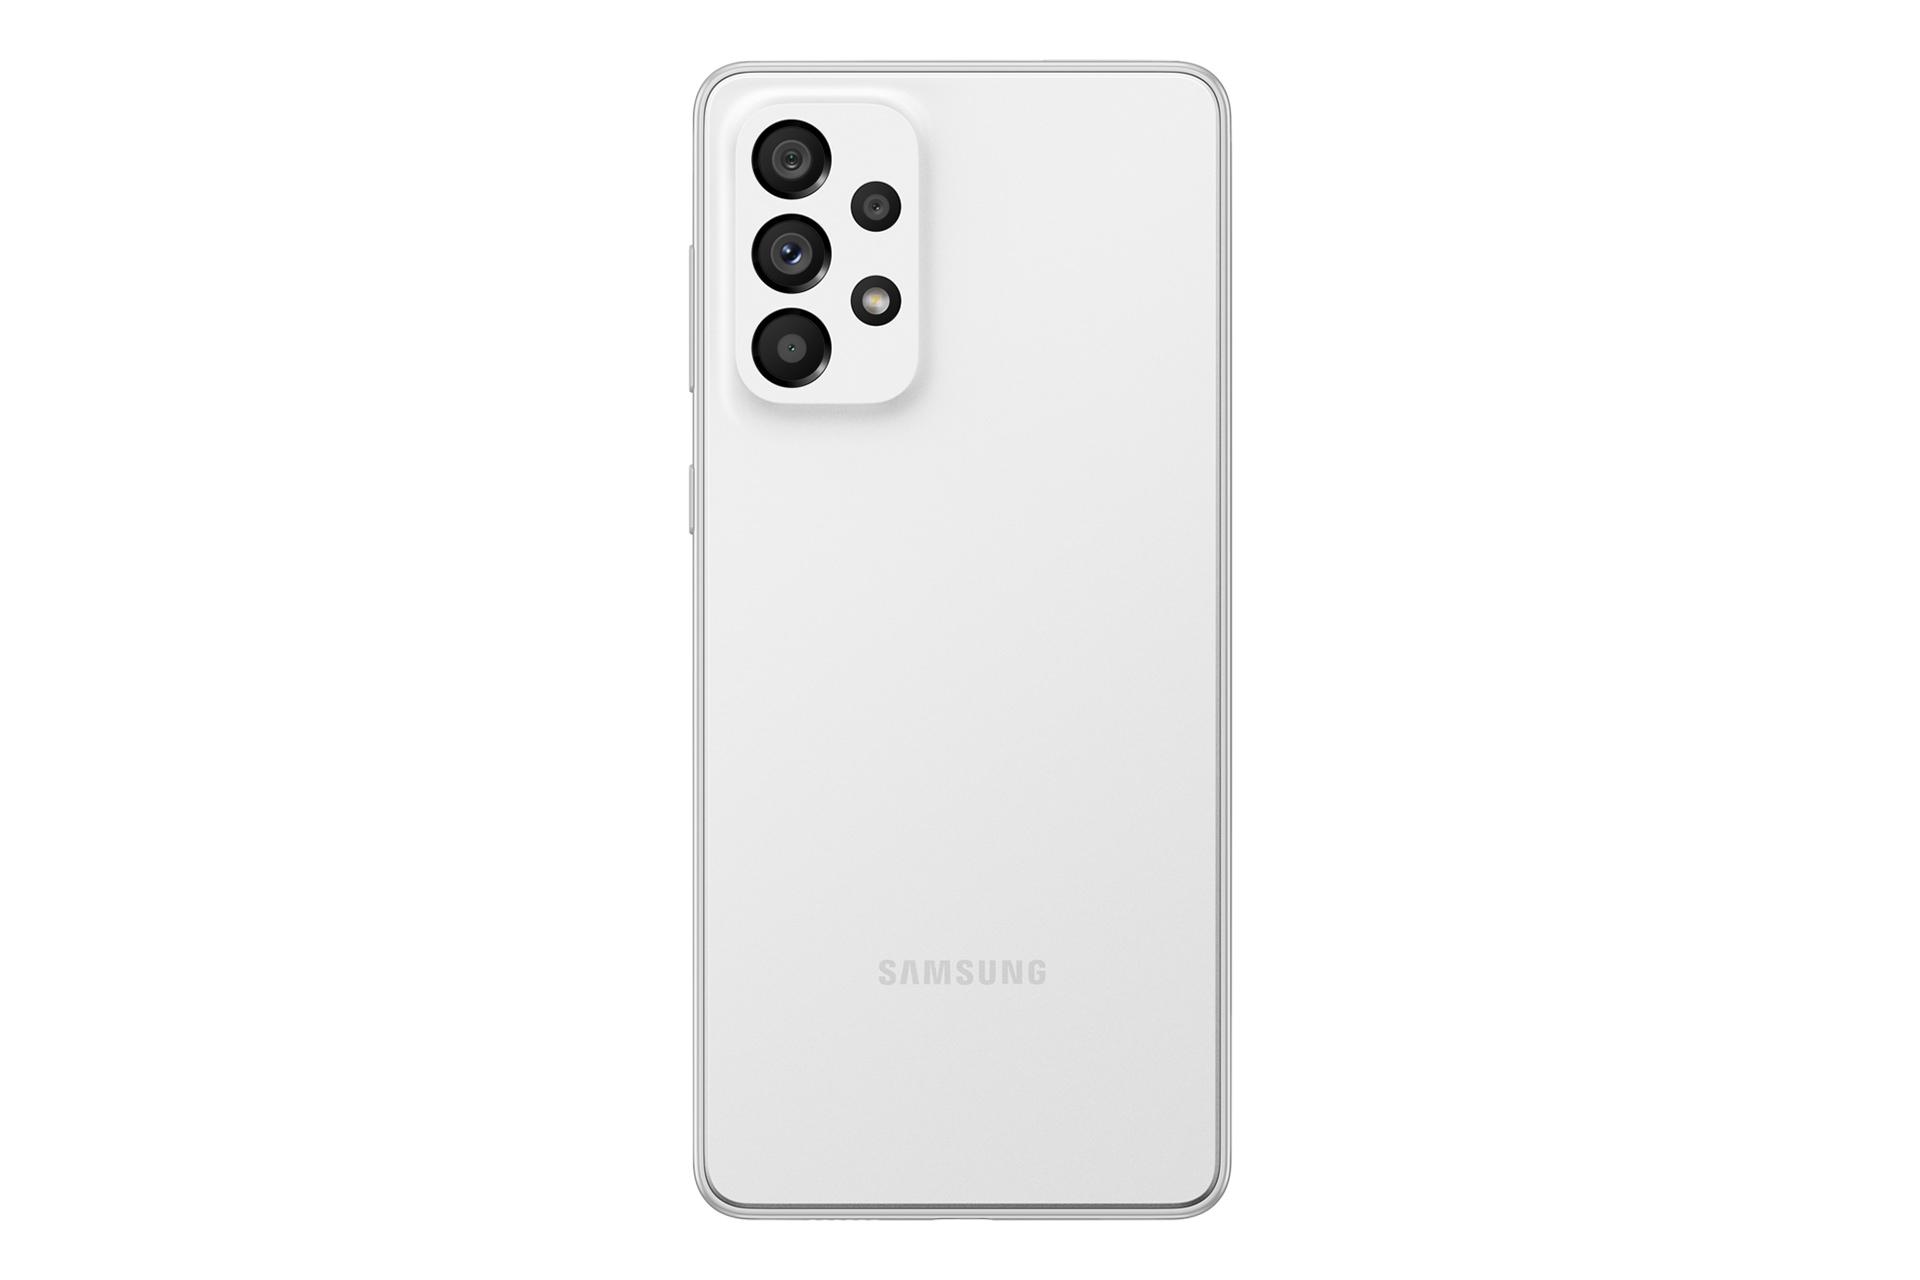 نمای پنل پشت Samsung Galaxy A73 5G / گوشی موبایل گلکسی A73 سامسونگ 5G با نمایش لوگو و دوربین پنل پشت رنگ سفید